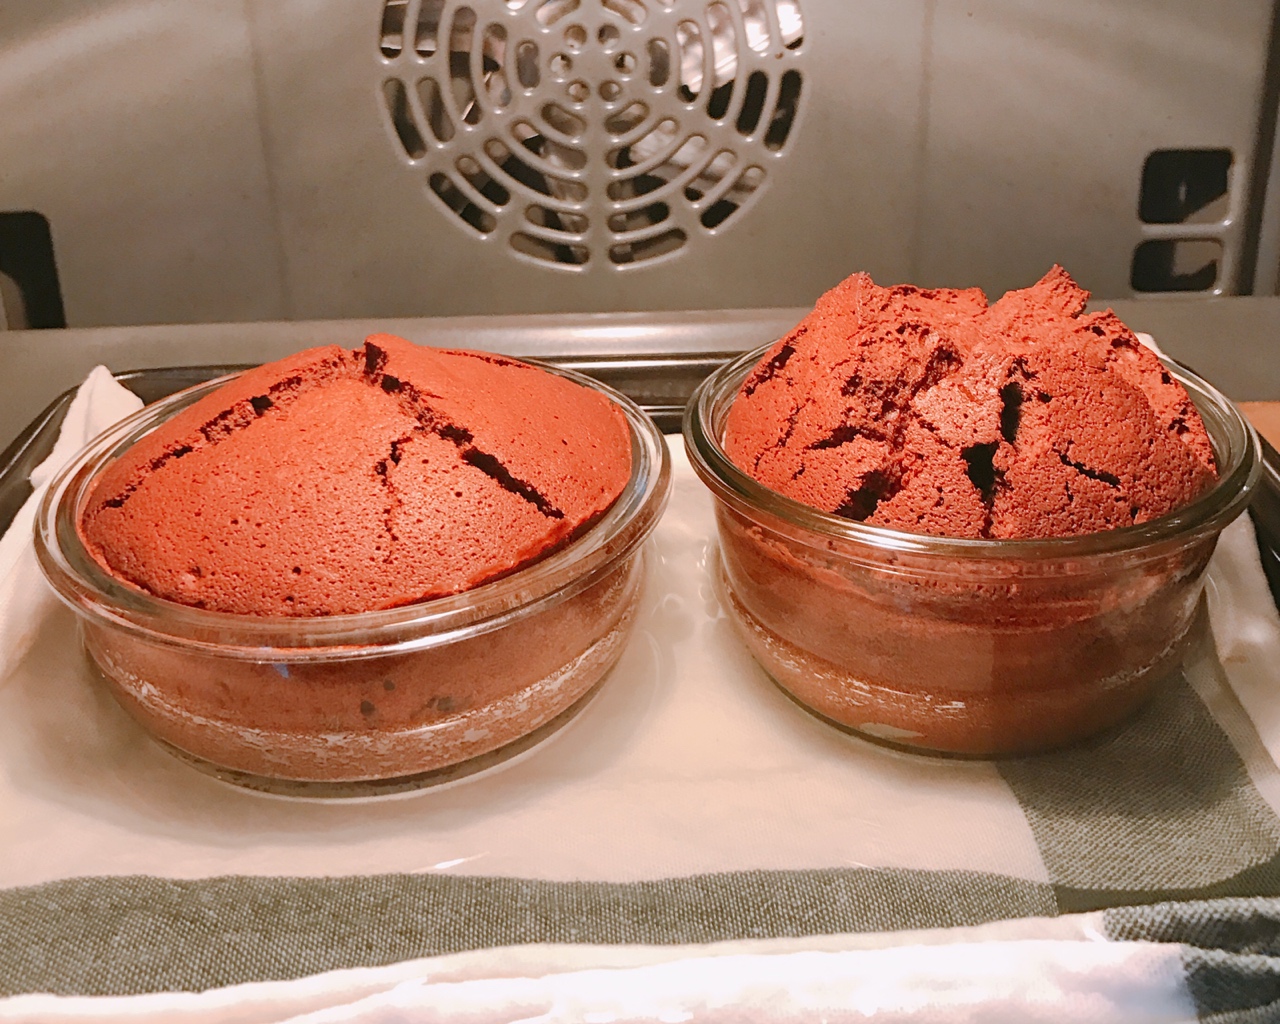 法式巧克力蛋糕(蒸烤巧克力蛋糕)的做法